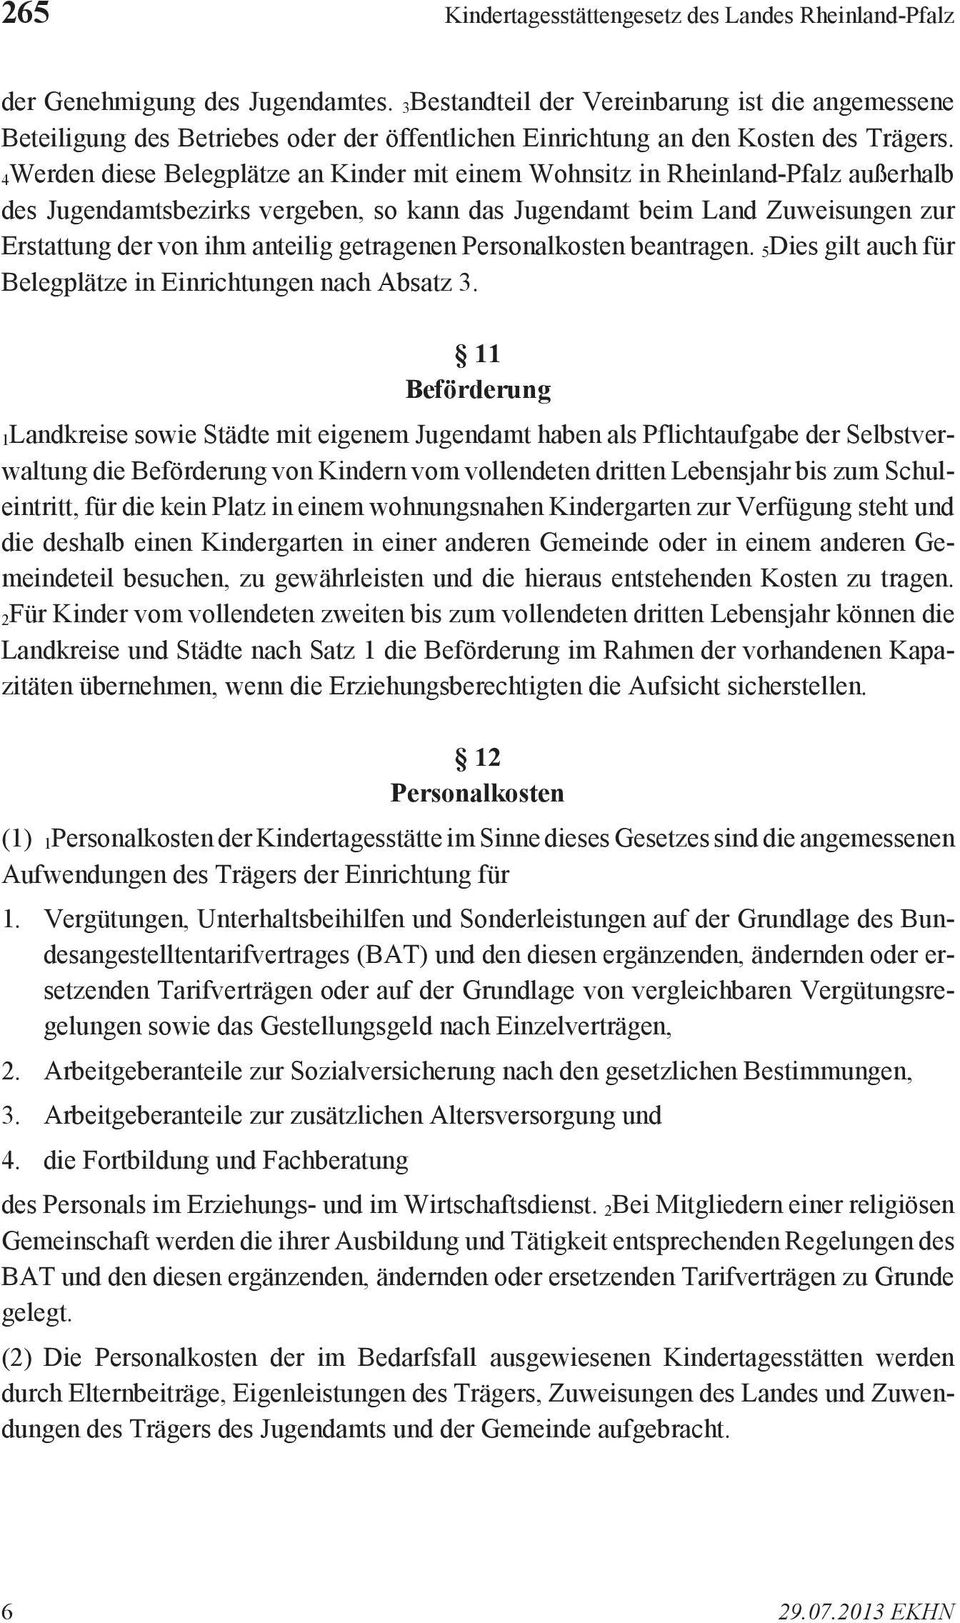 4Werden diese Belegplätze an Kinder mit einem Wohnsitz in Rheinland-Pfalz außerhalb des Jugendamtsbezirks vergeben, so kann das Jugendamt beim Land Zuweisungen zur Erstattung der von ihm anteilig